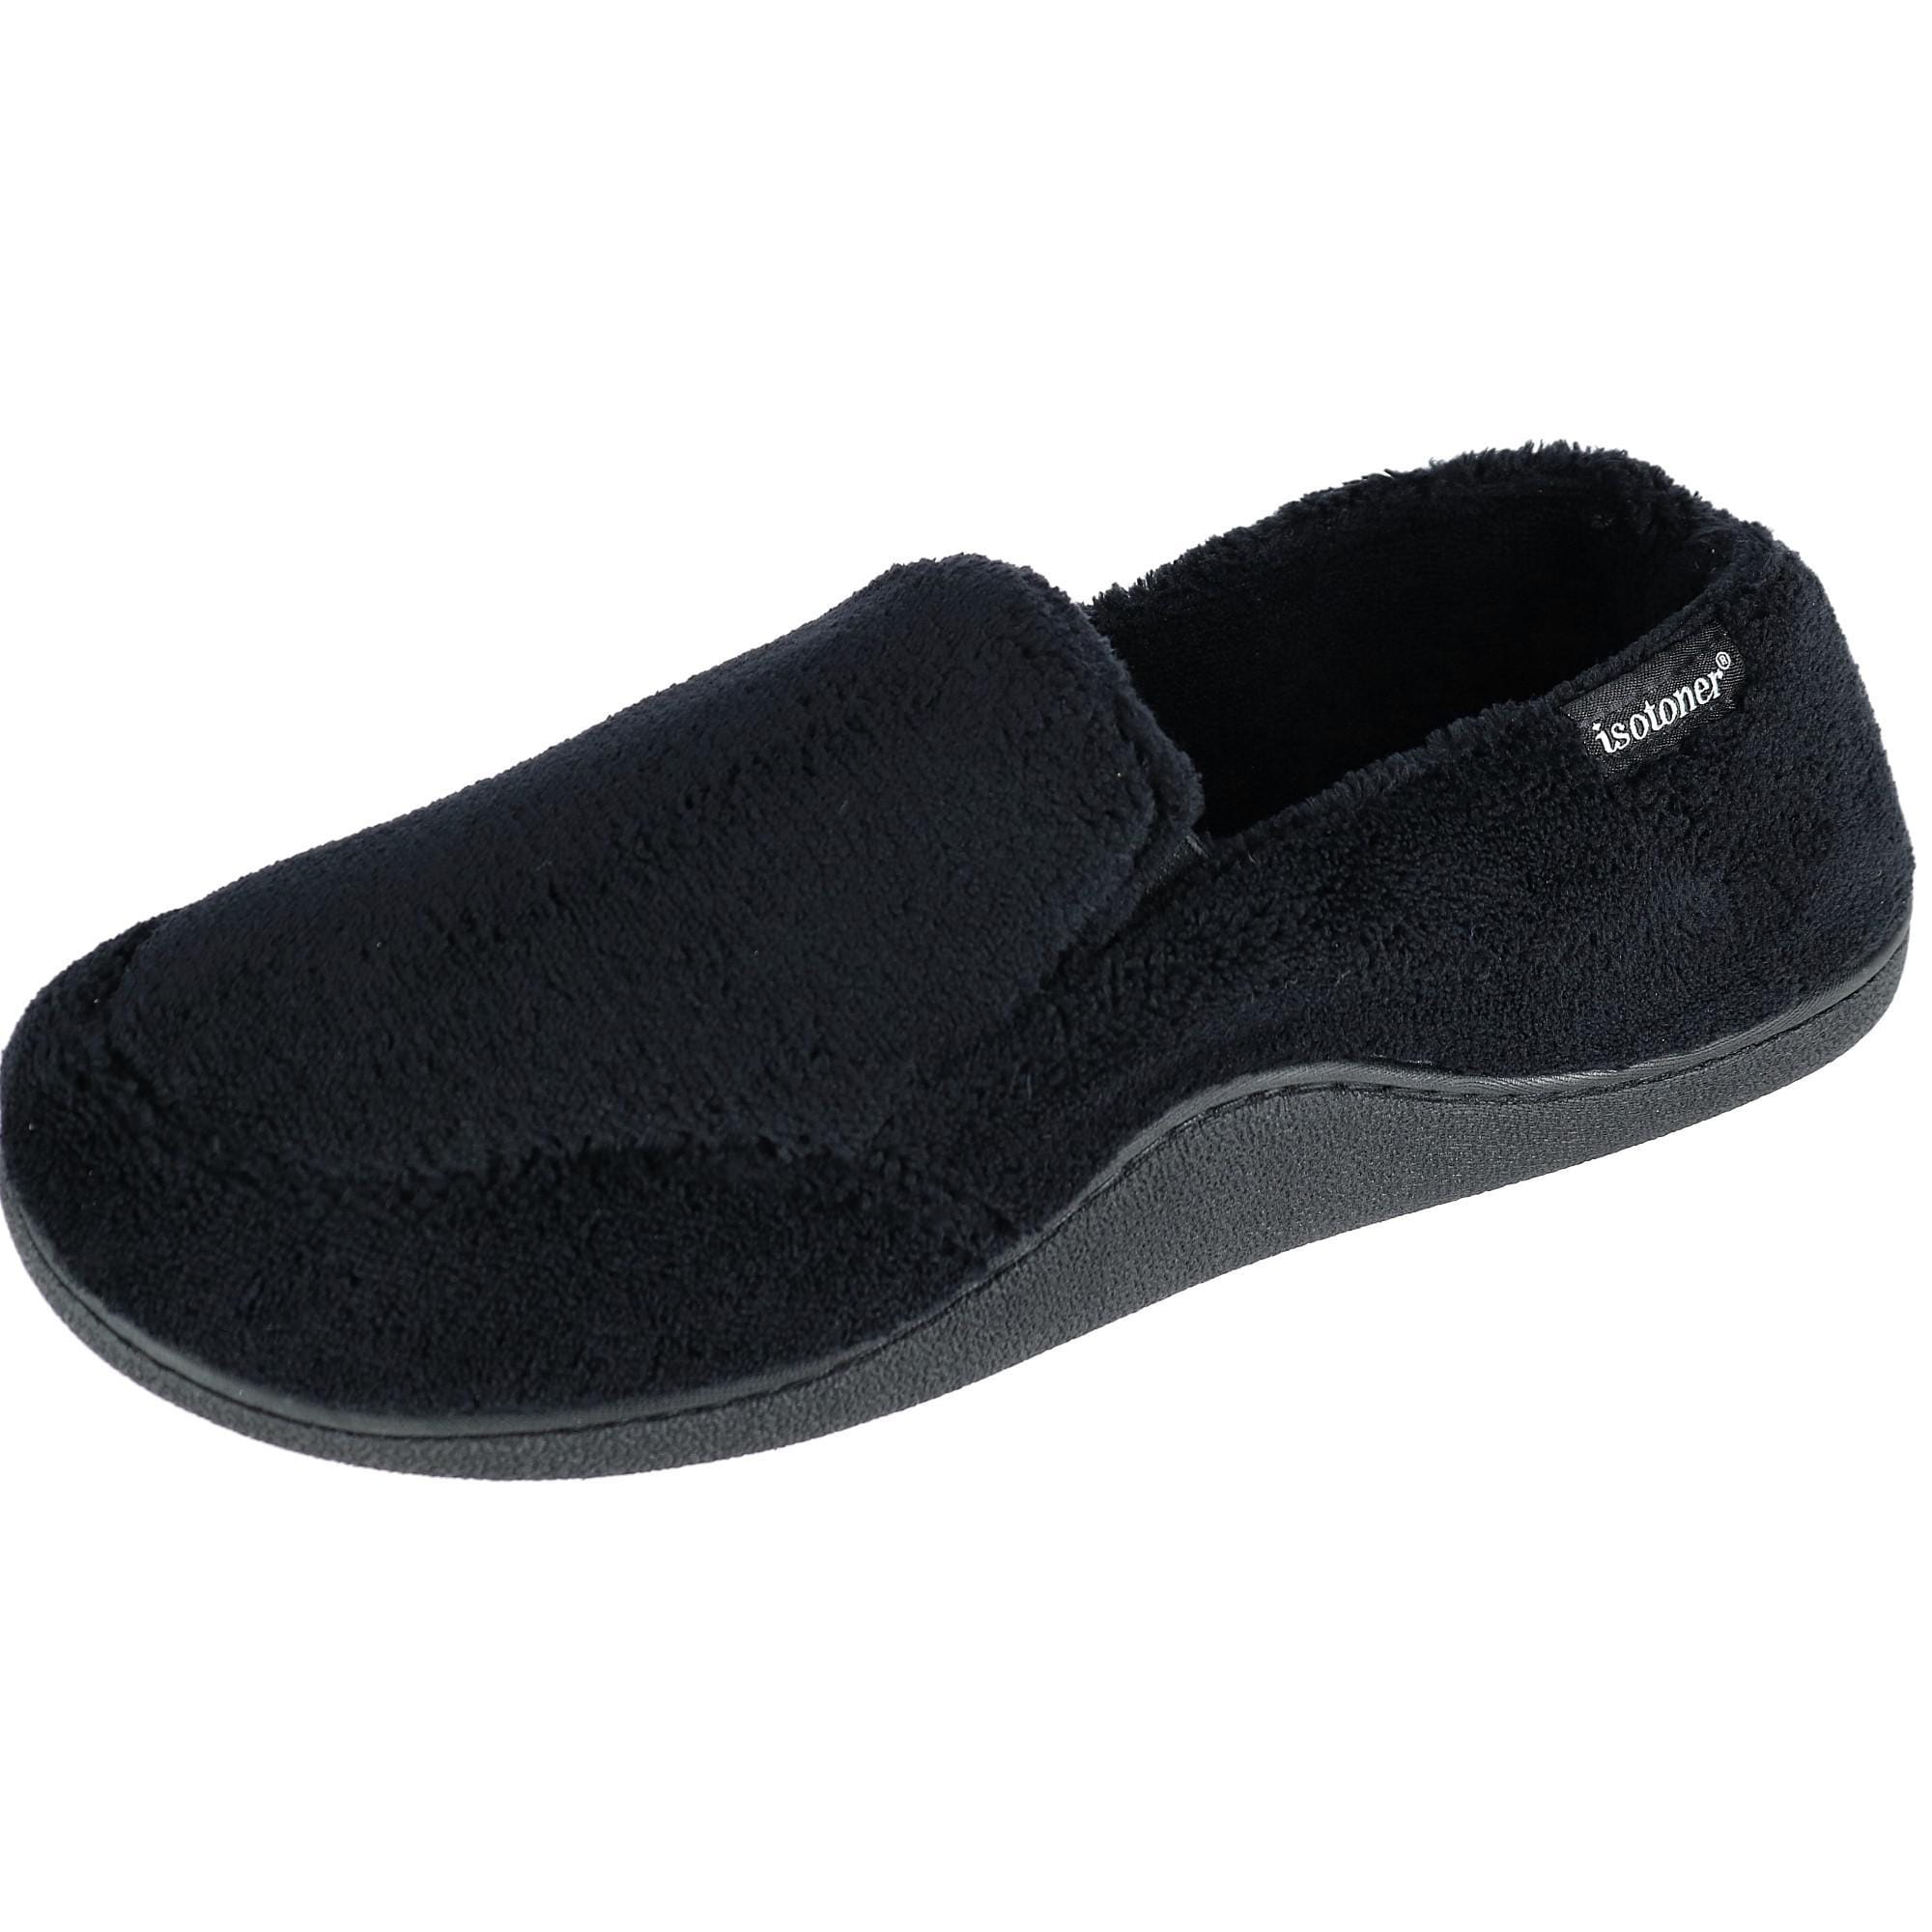 isotoner men's slippers memory foam